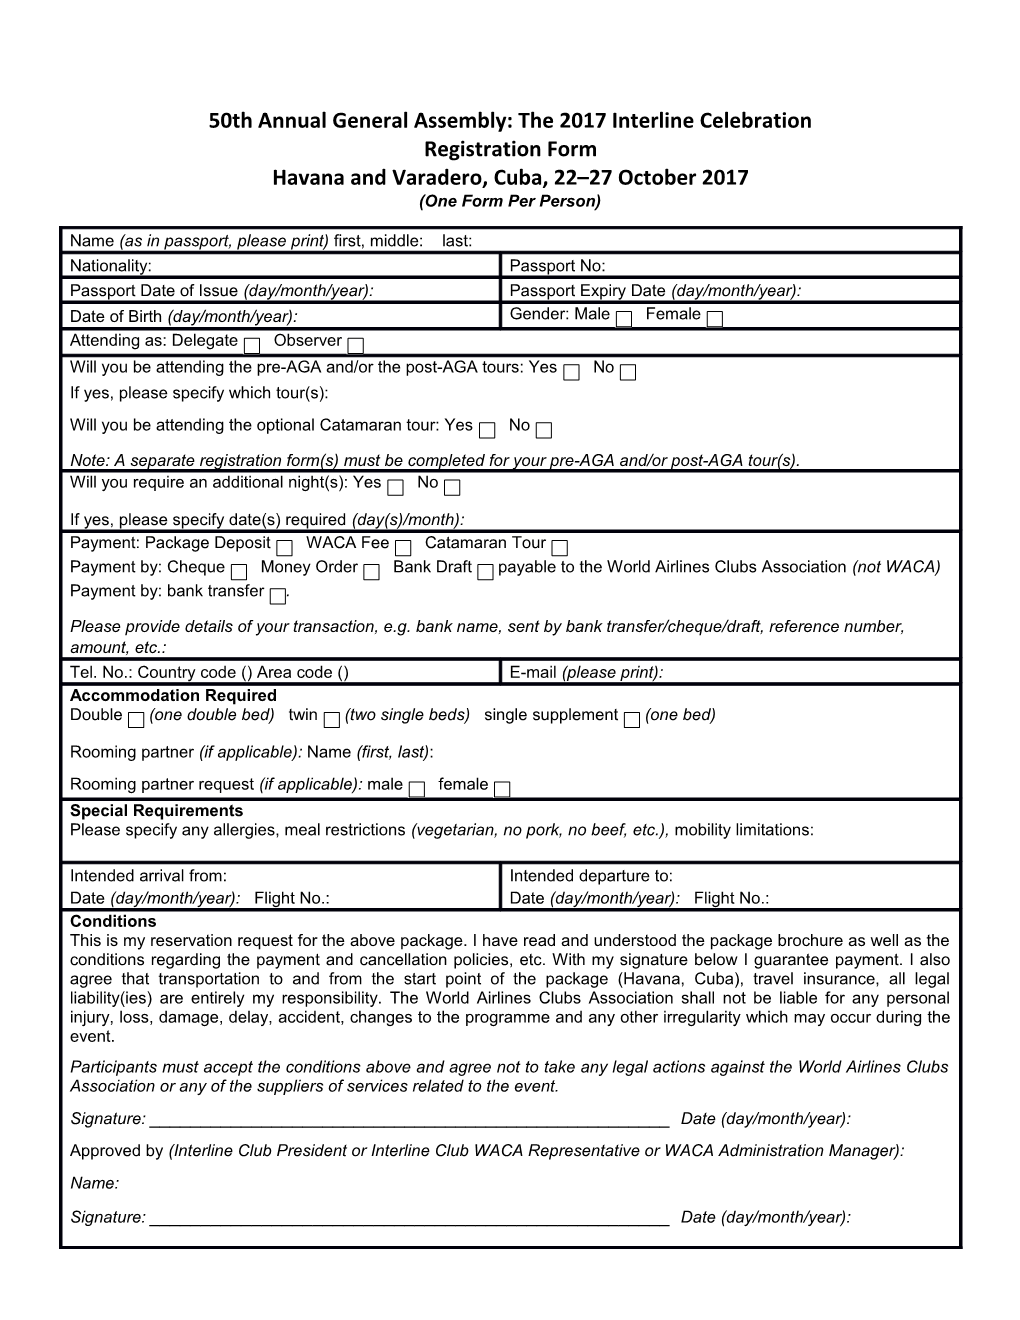 50Th AGA - Registration Form